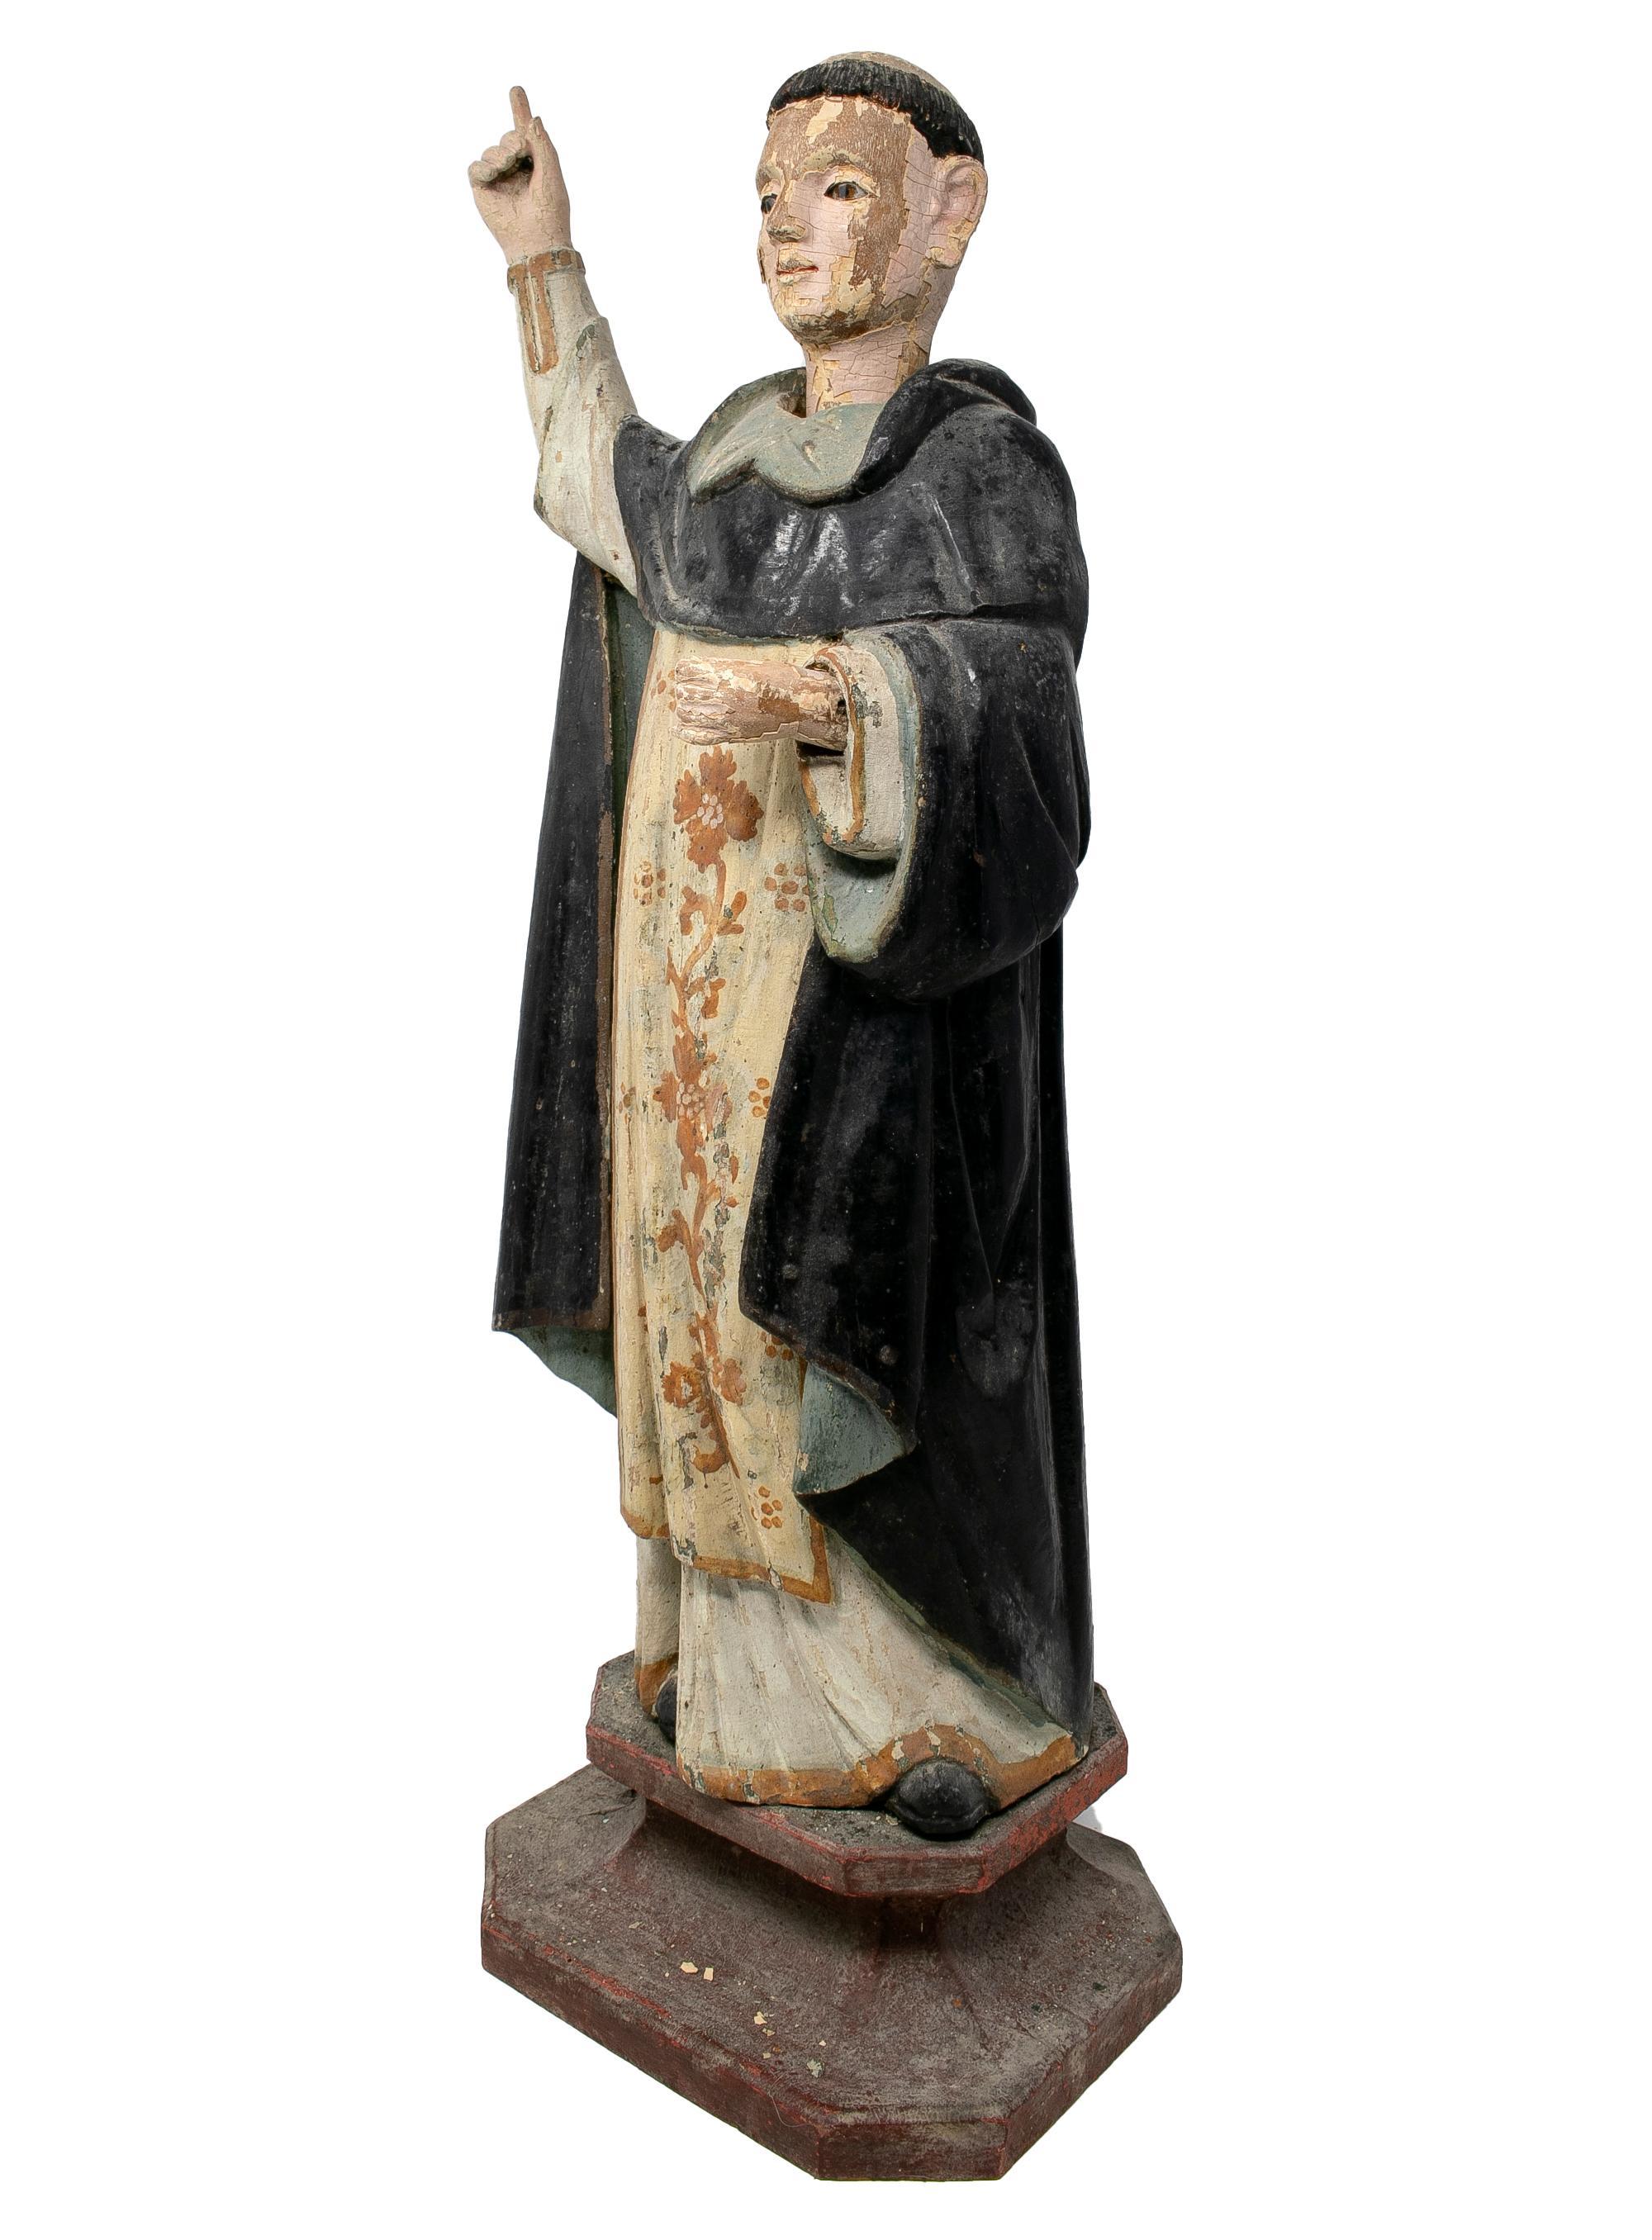 Escultura figurativa española policromada y pintada de un santo, de mediados del siglo XIX.